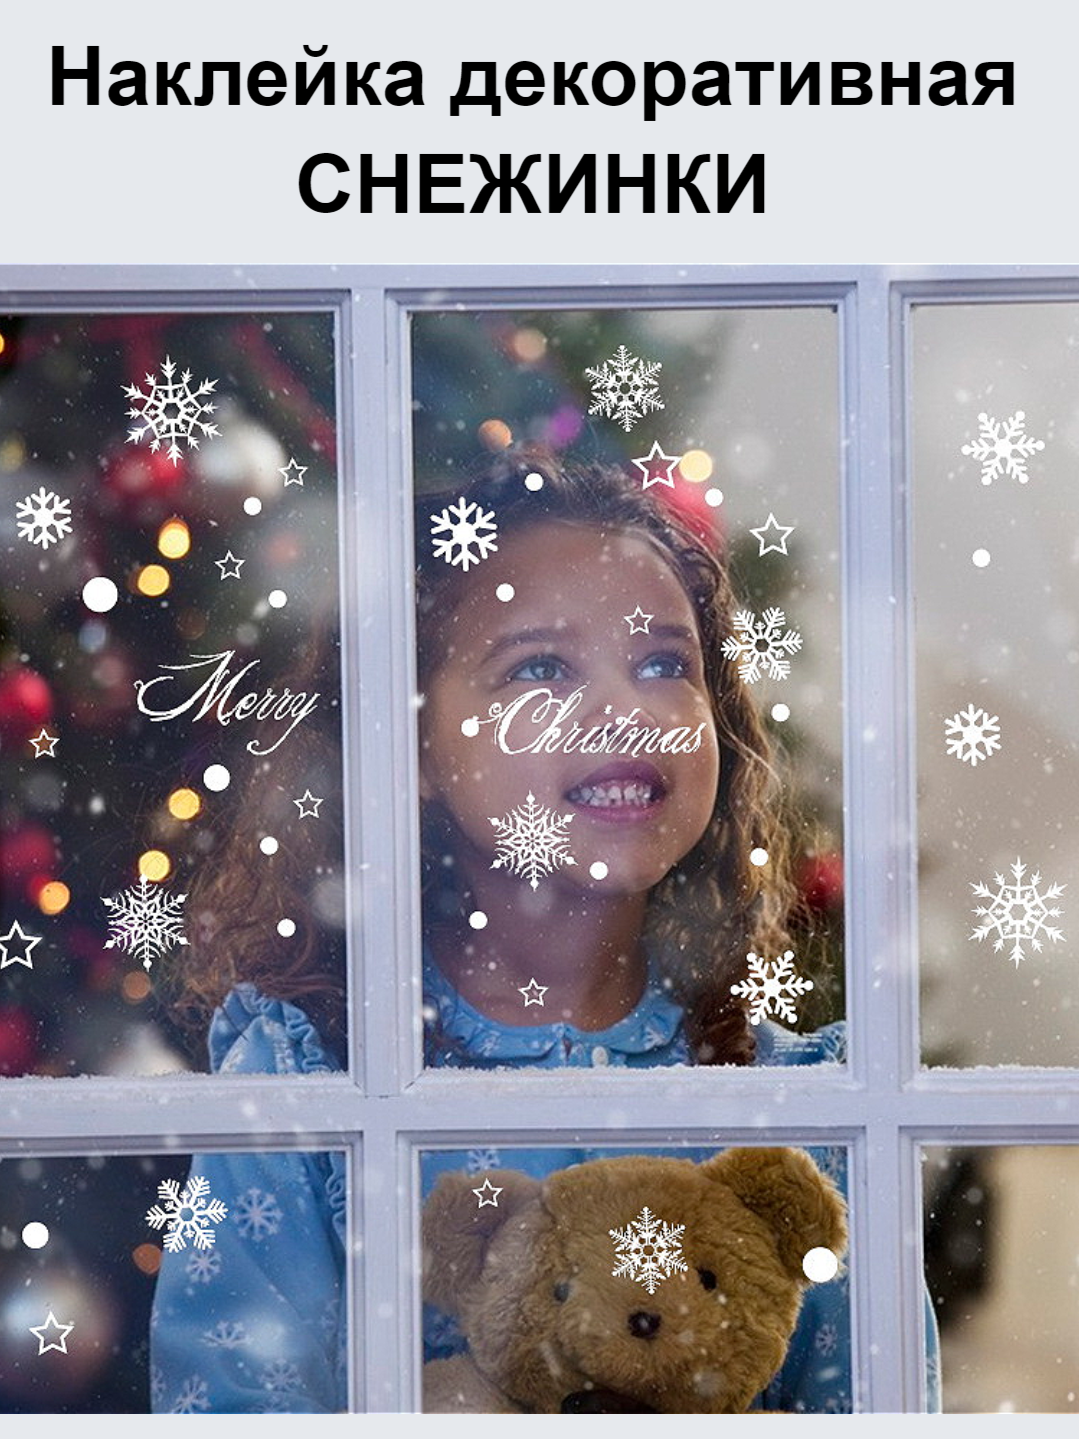 Снежинки на окна и стены - декоративные новогодние наклейки белые для интерьера дома